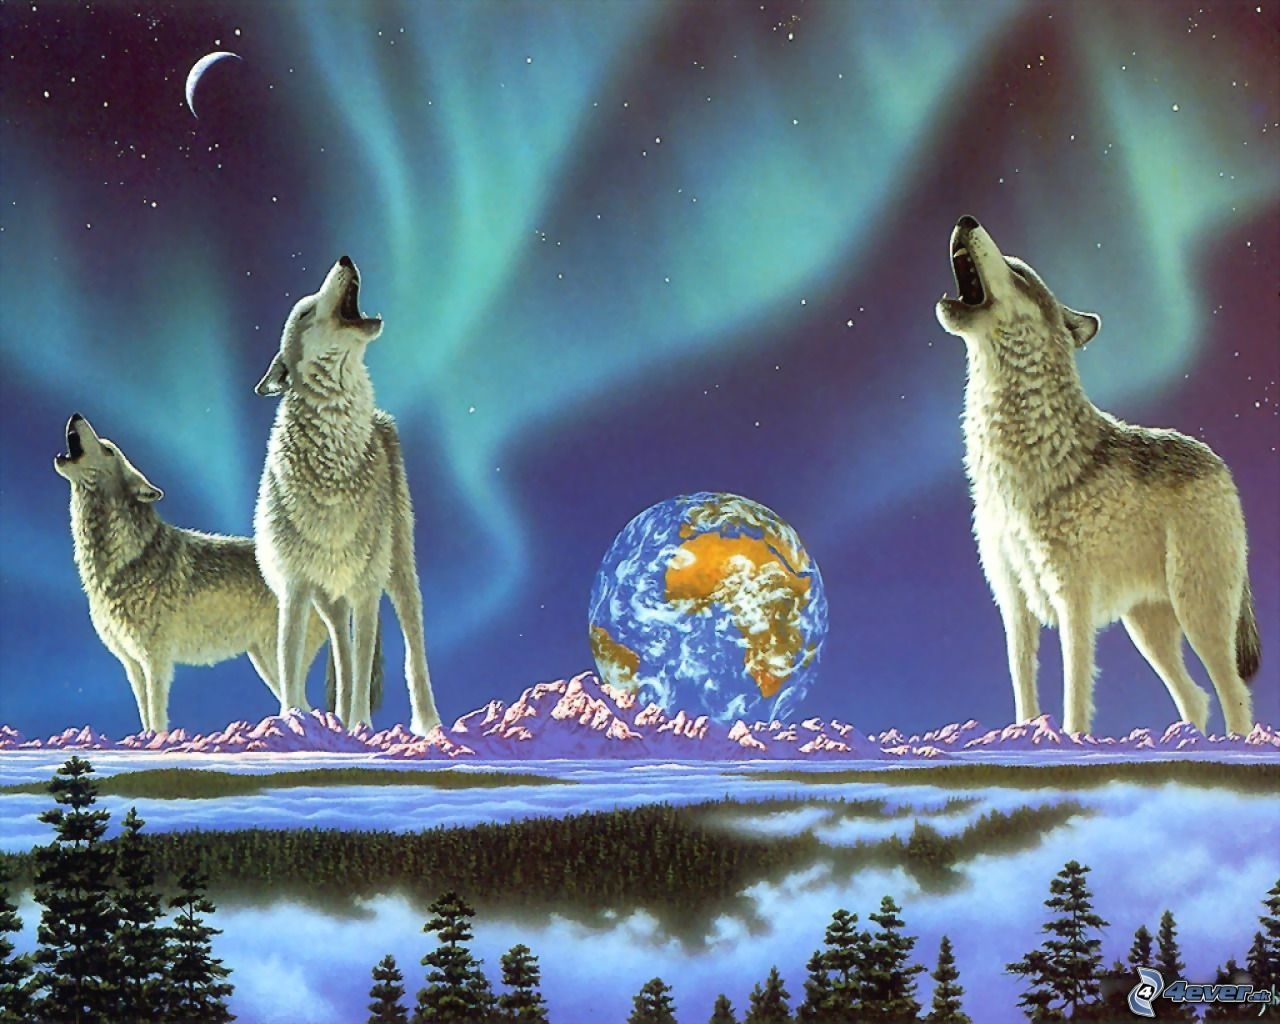 [obrazky.4ever.sk] vlky, polarna ziara, zem, kreslene, umenie 7511364